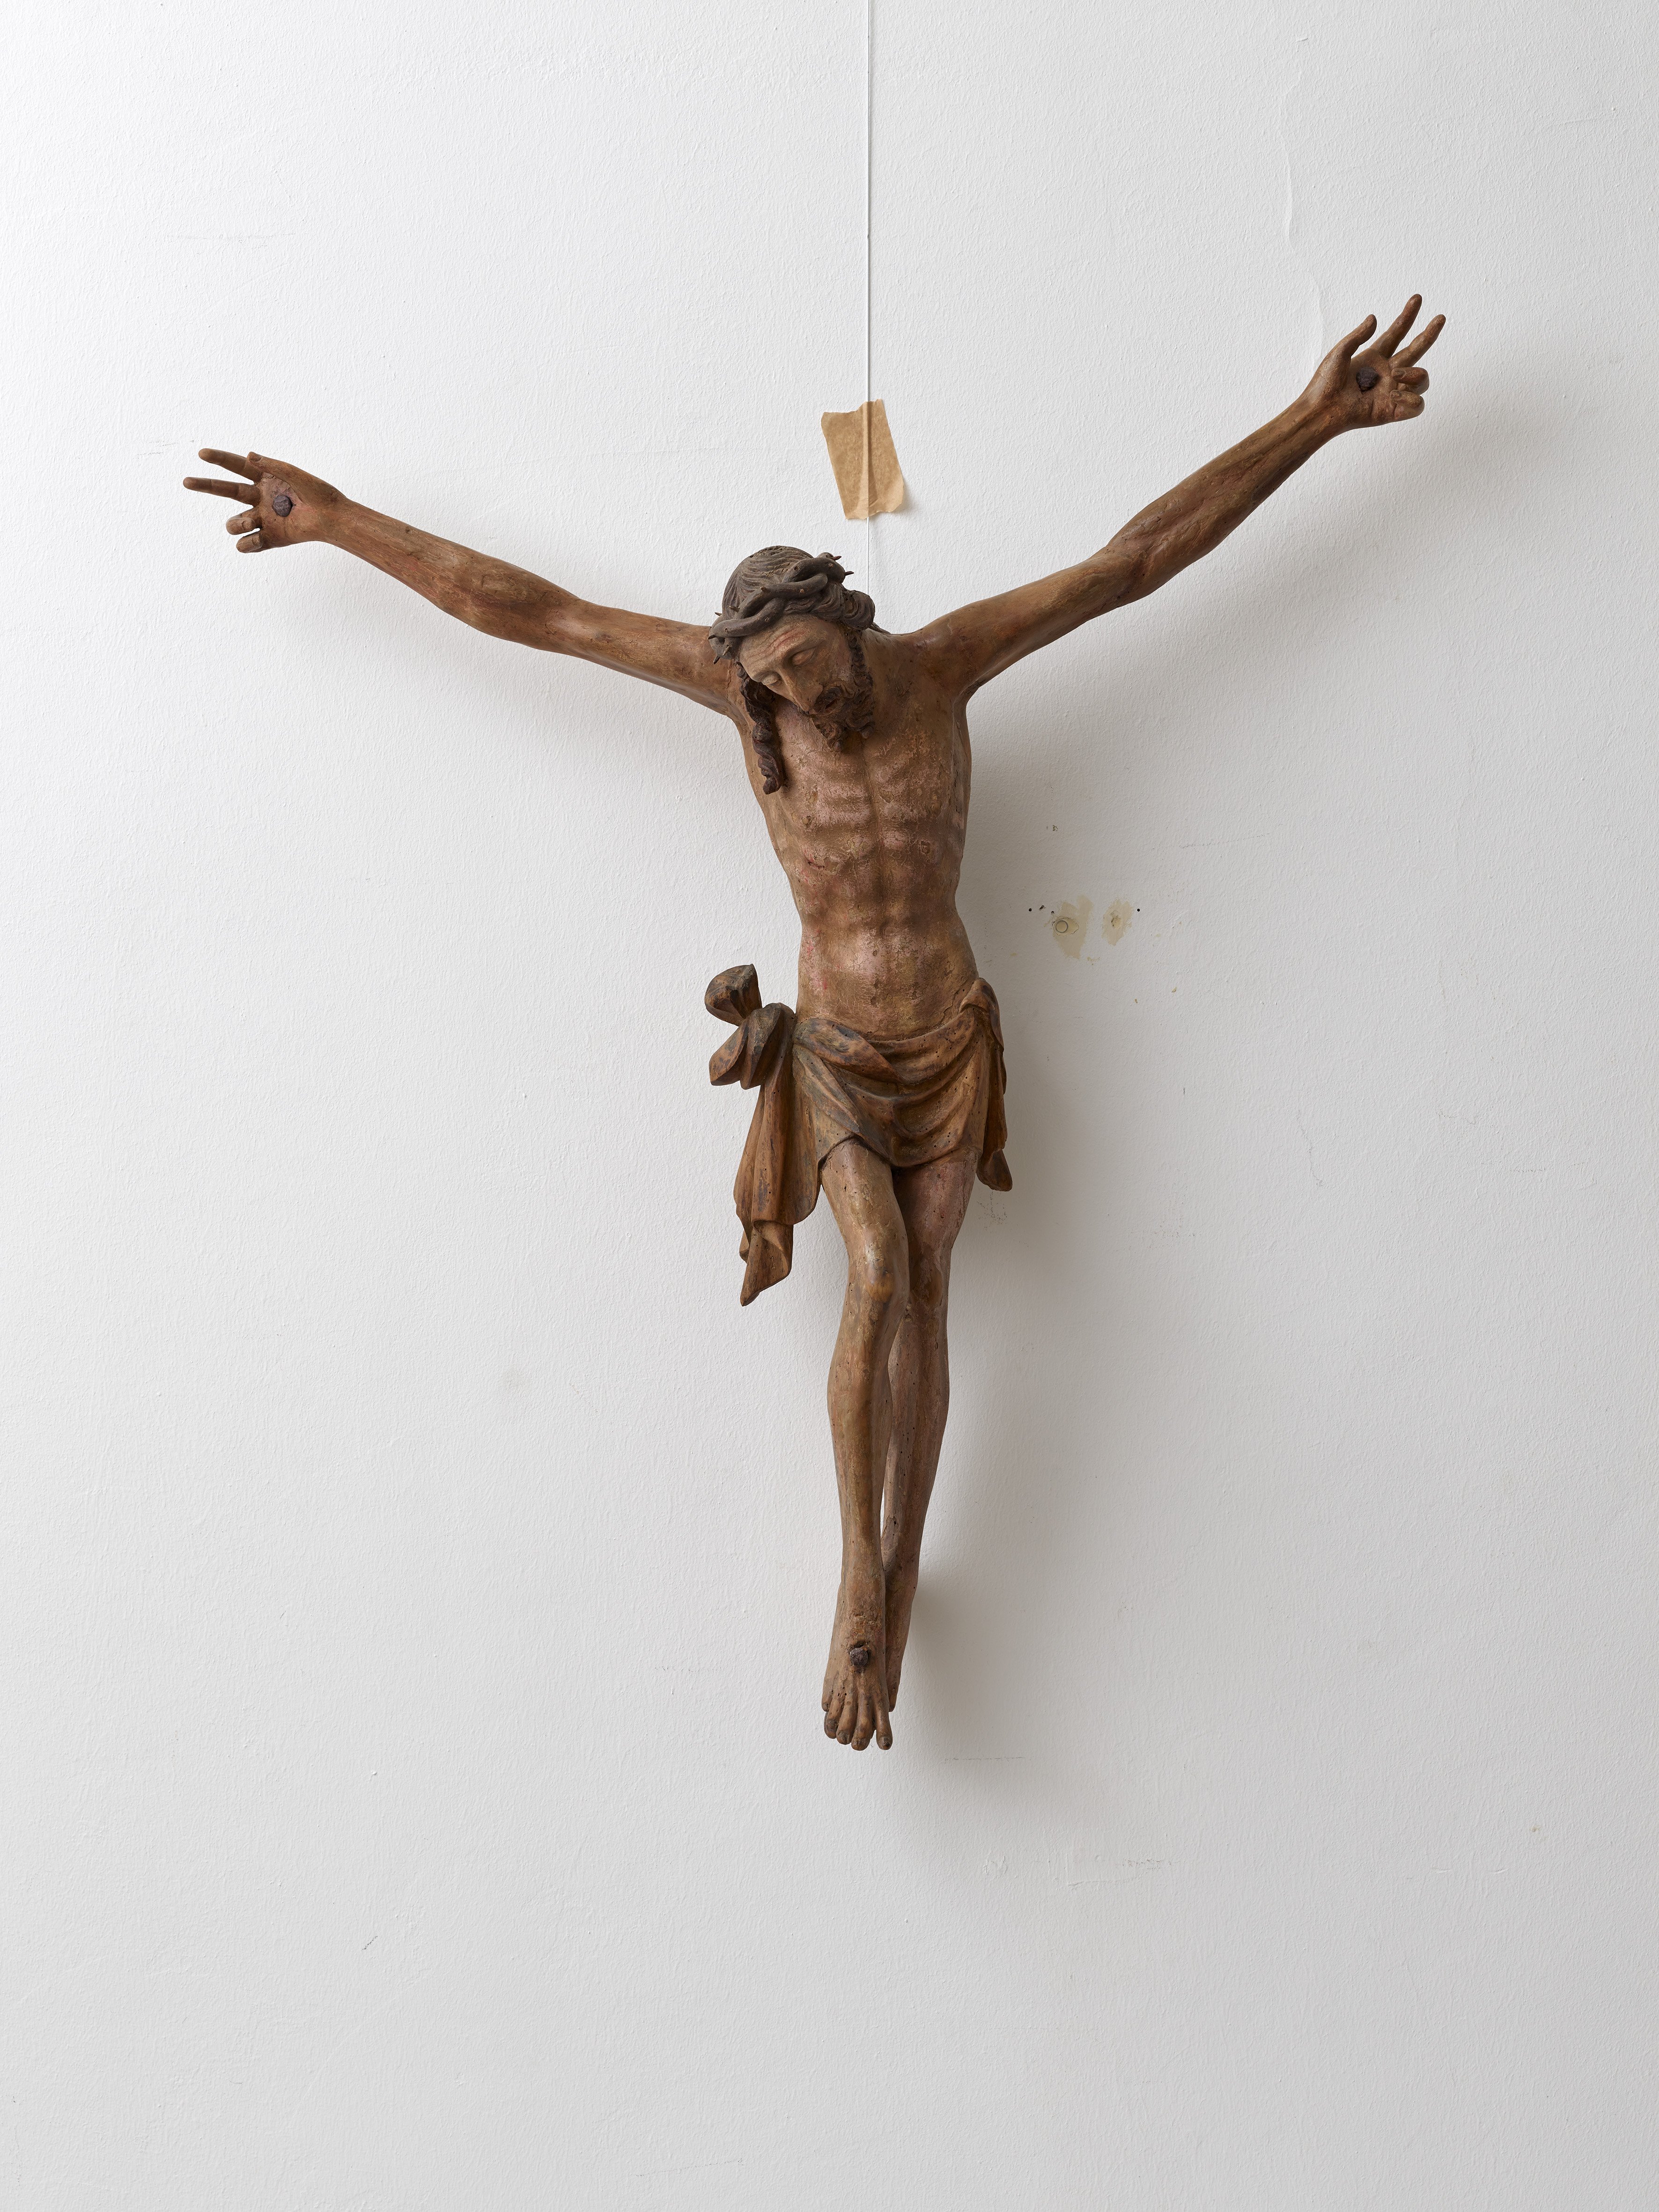 Teil eines Kruzifix: Corpus Christie, 16. Jahrhundert (Städtisches Museum Schloss Rheydt CC BY)